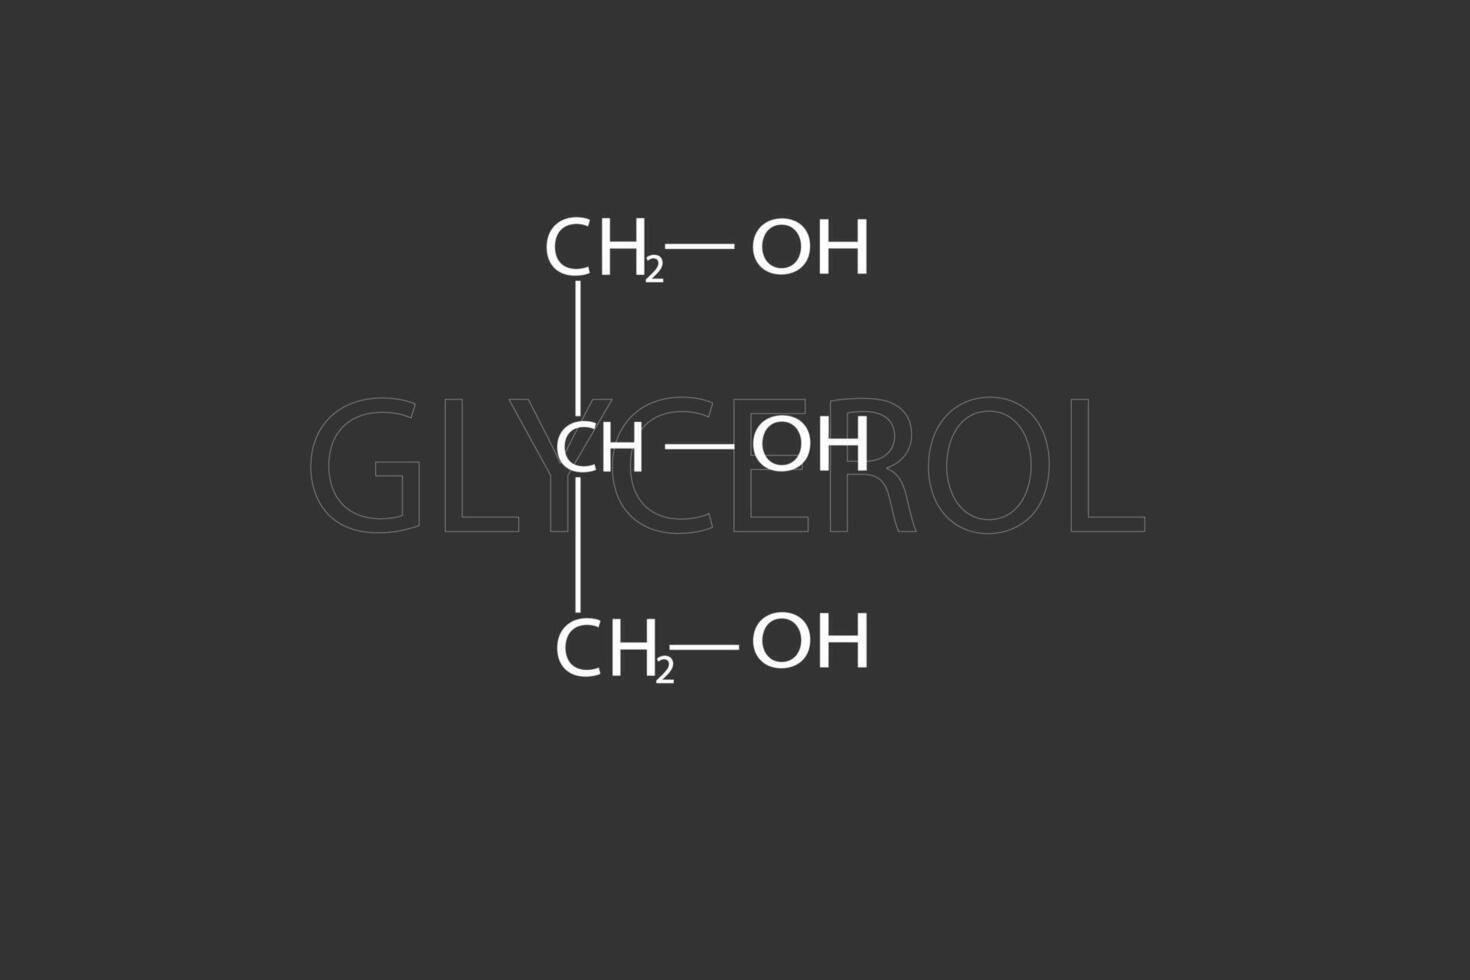 Glycerin molekular Skelett- chemisch Formel vektor